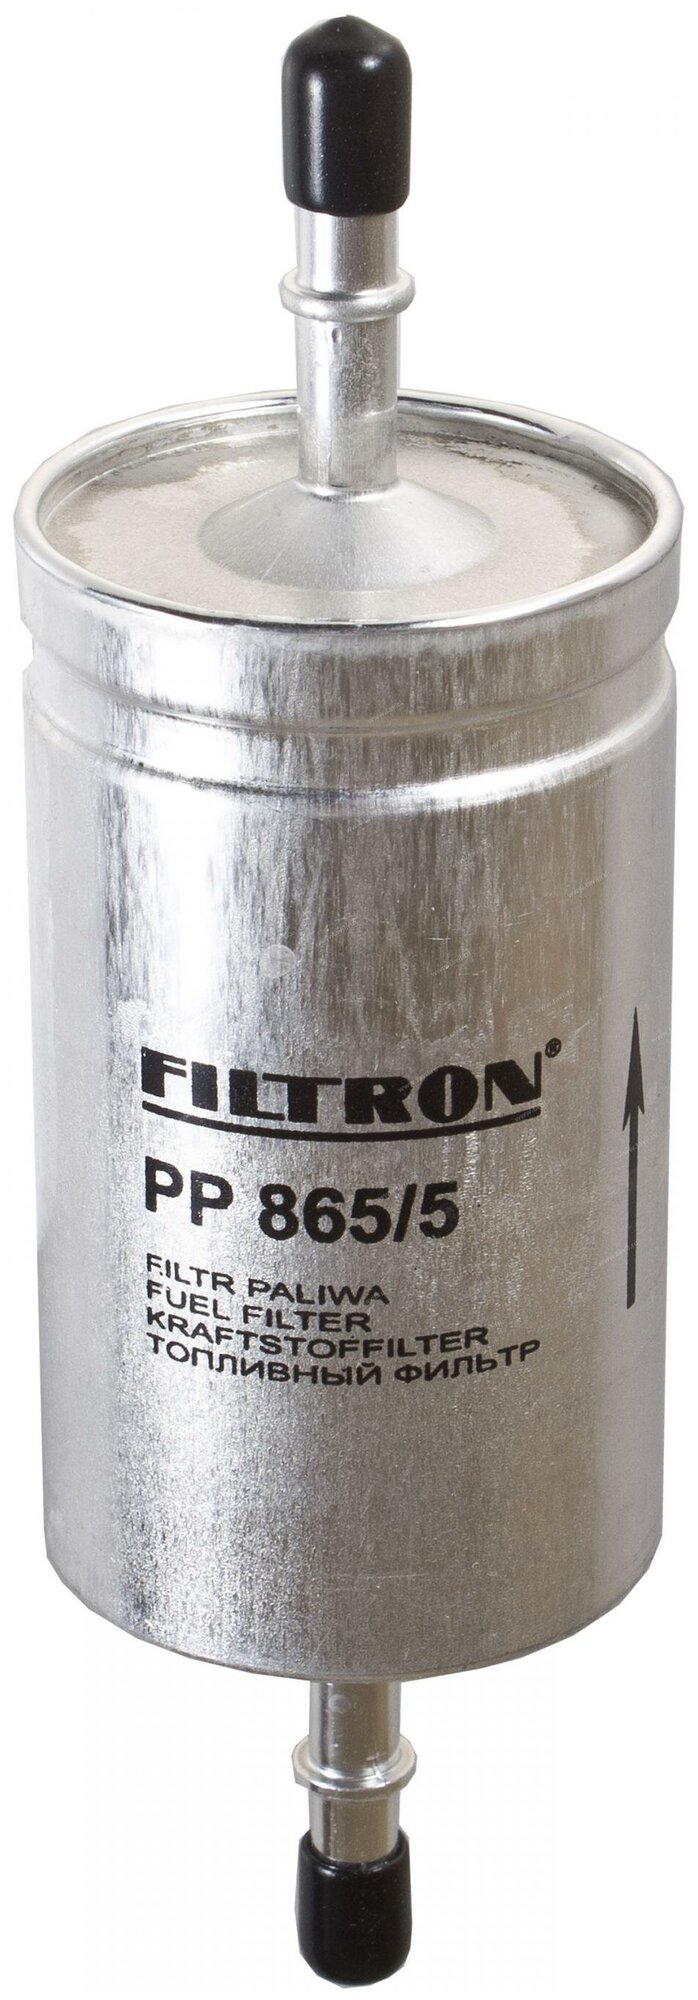 FILTRON фильтр топливный PP8655